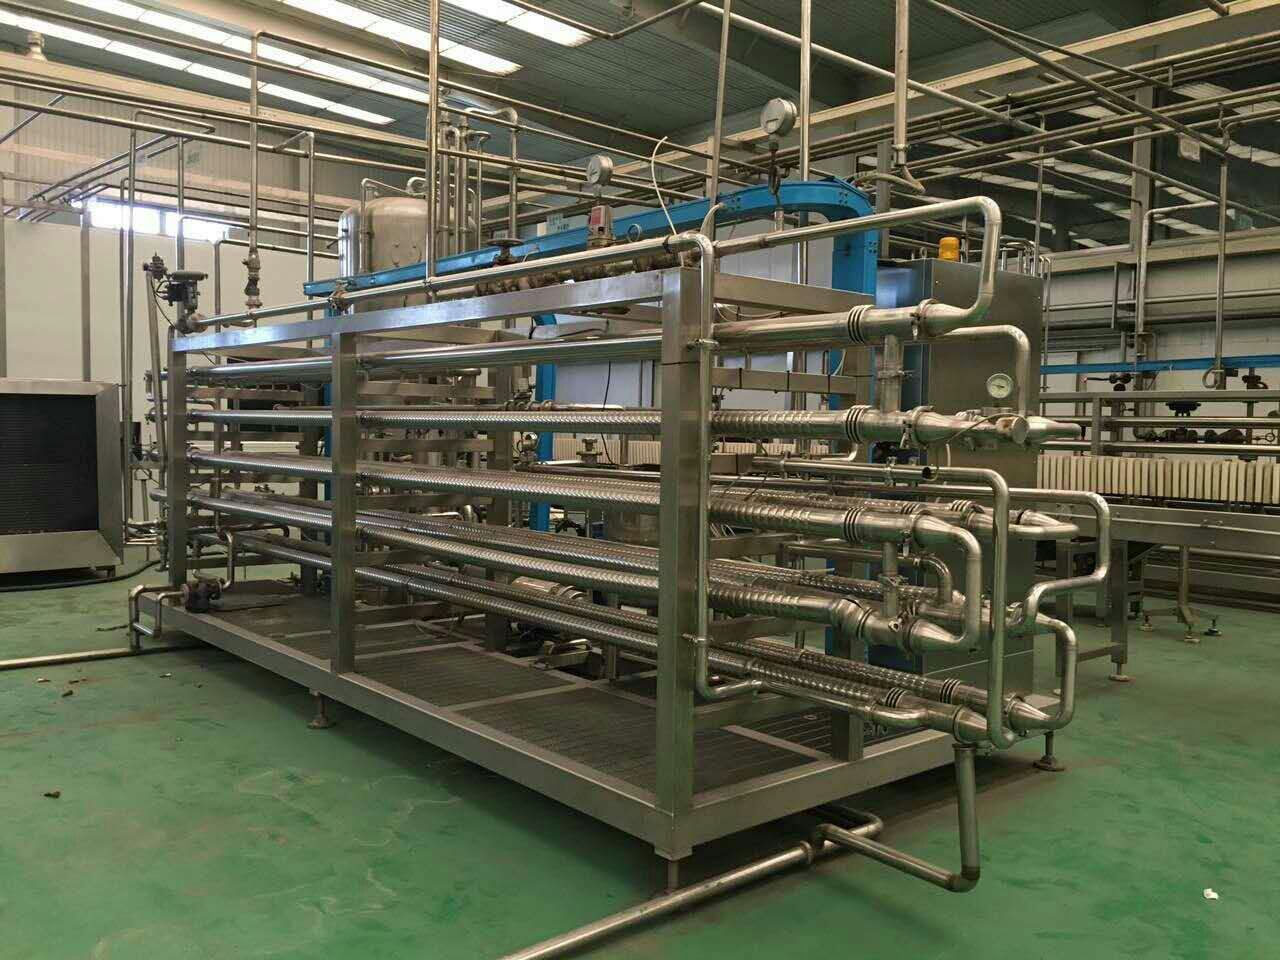 惠州博罗县啤酒厂设备回收-惠州博罗县长期回收闲置工厂设备